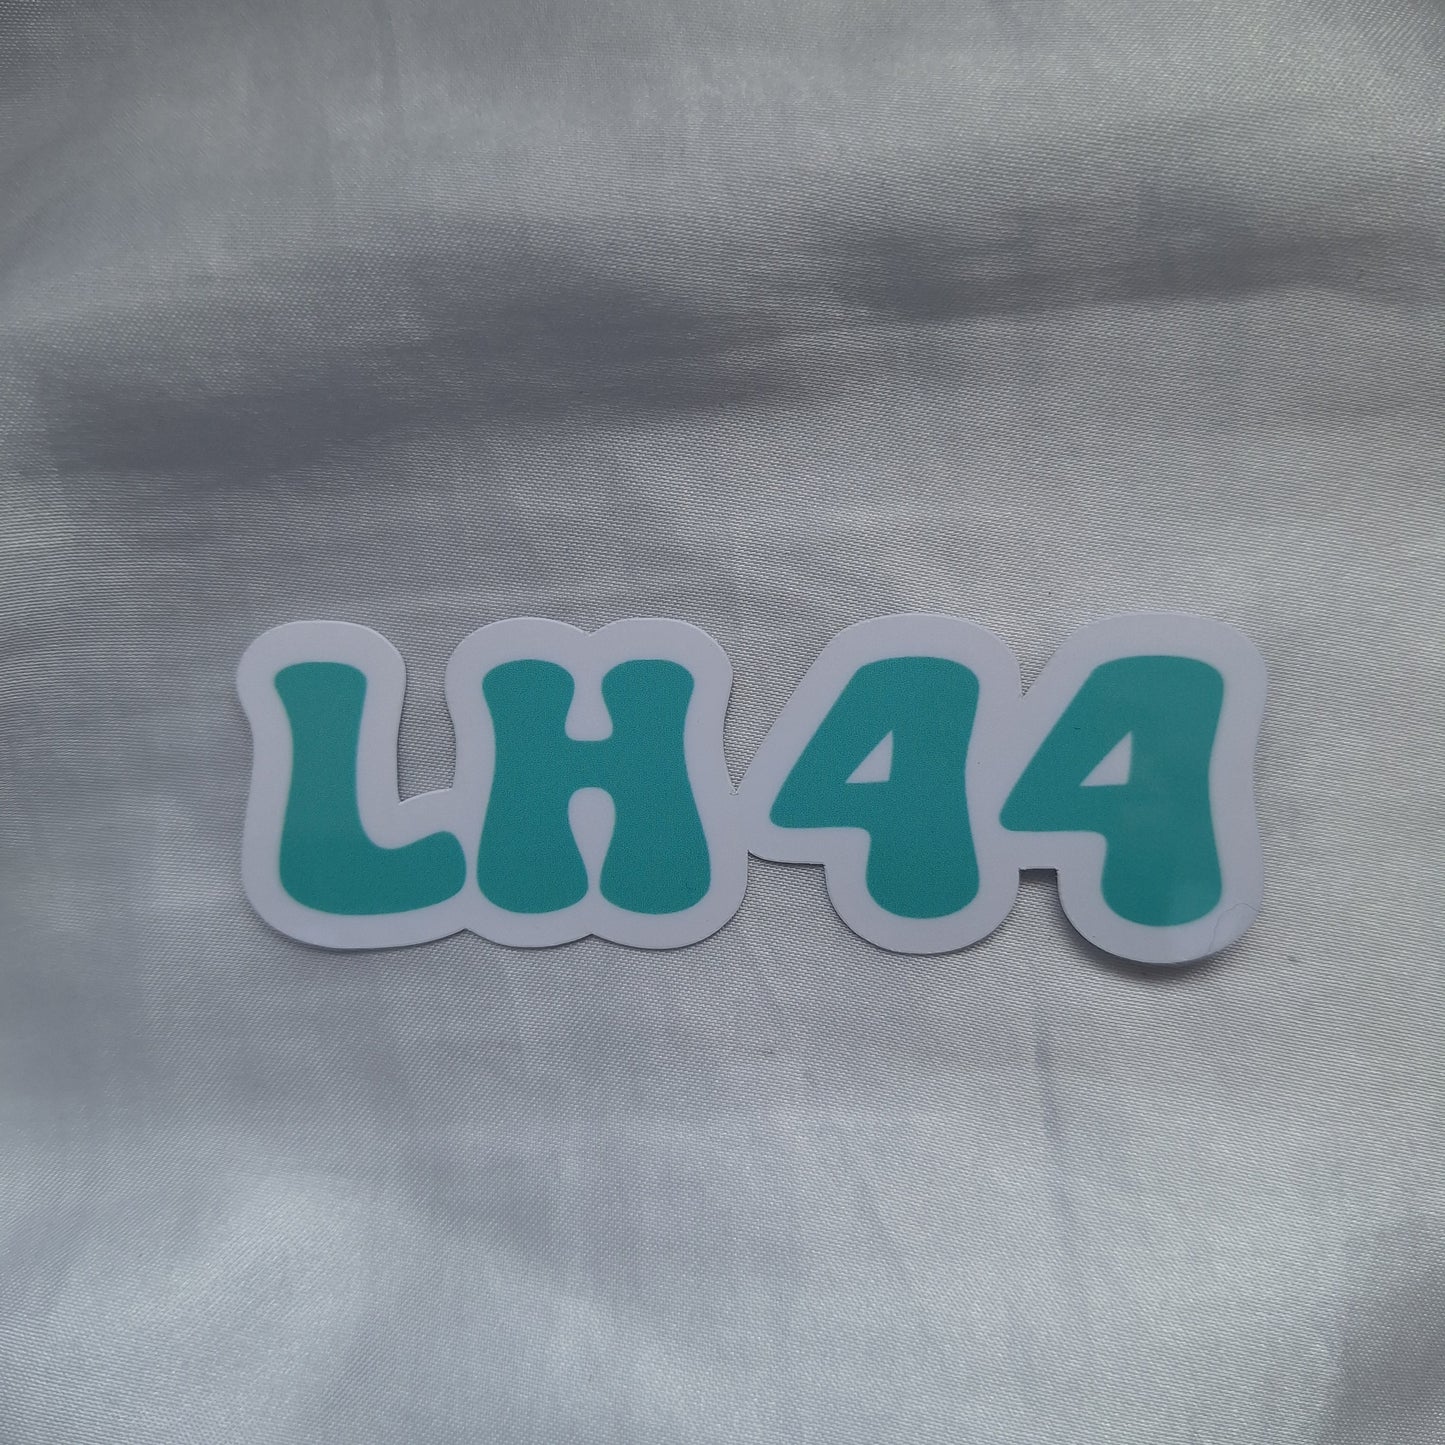 LH 44 Sticker